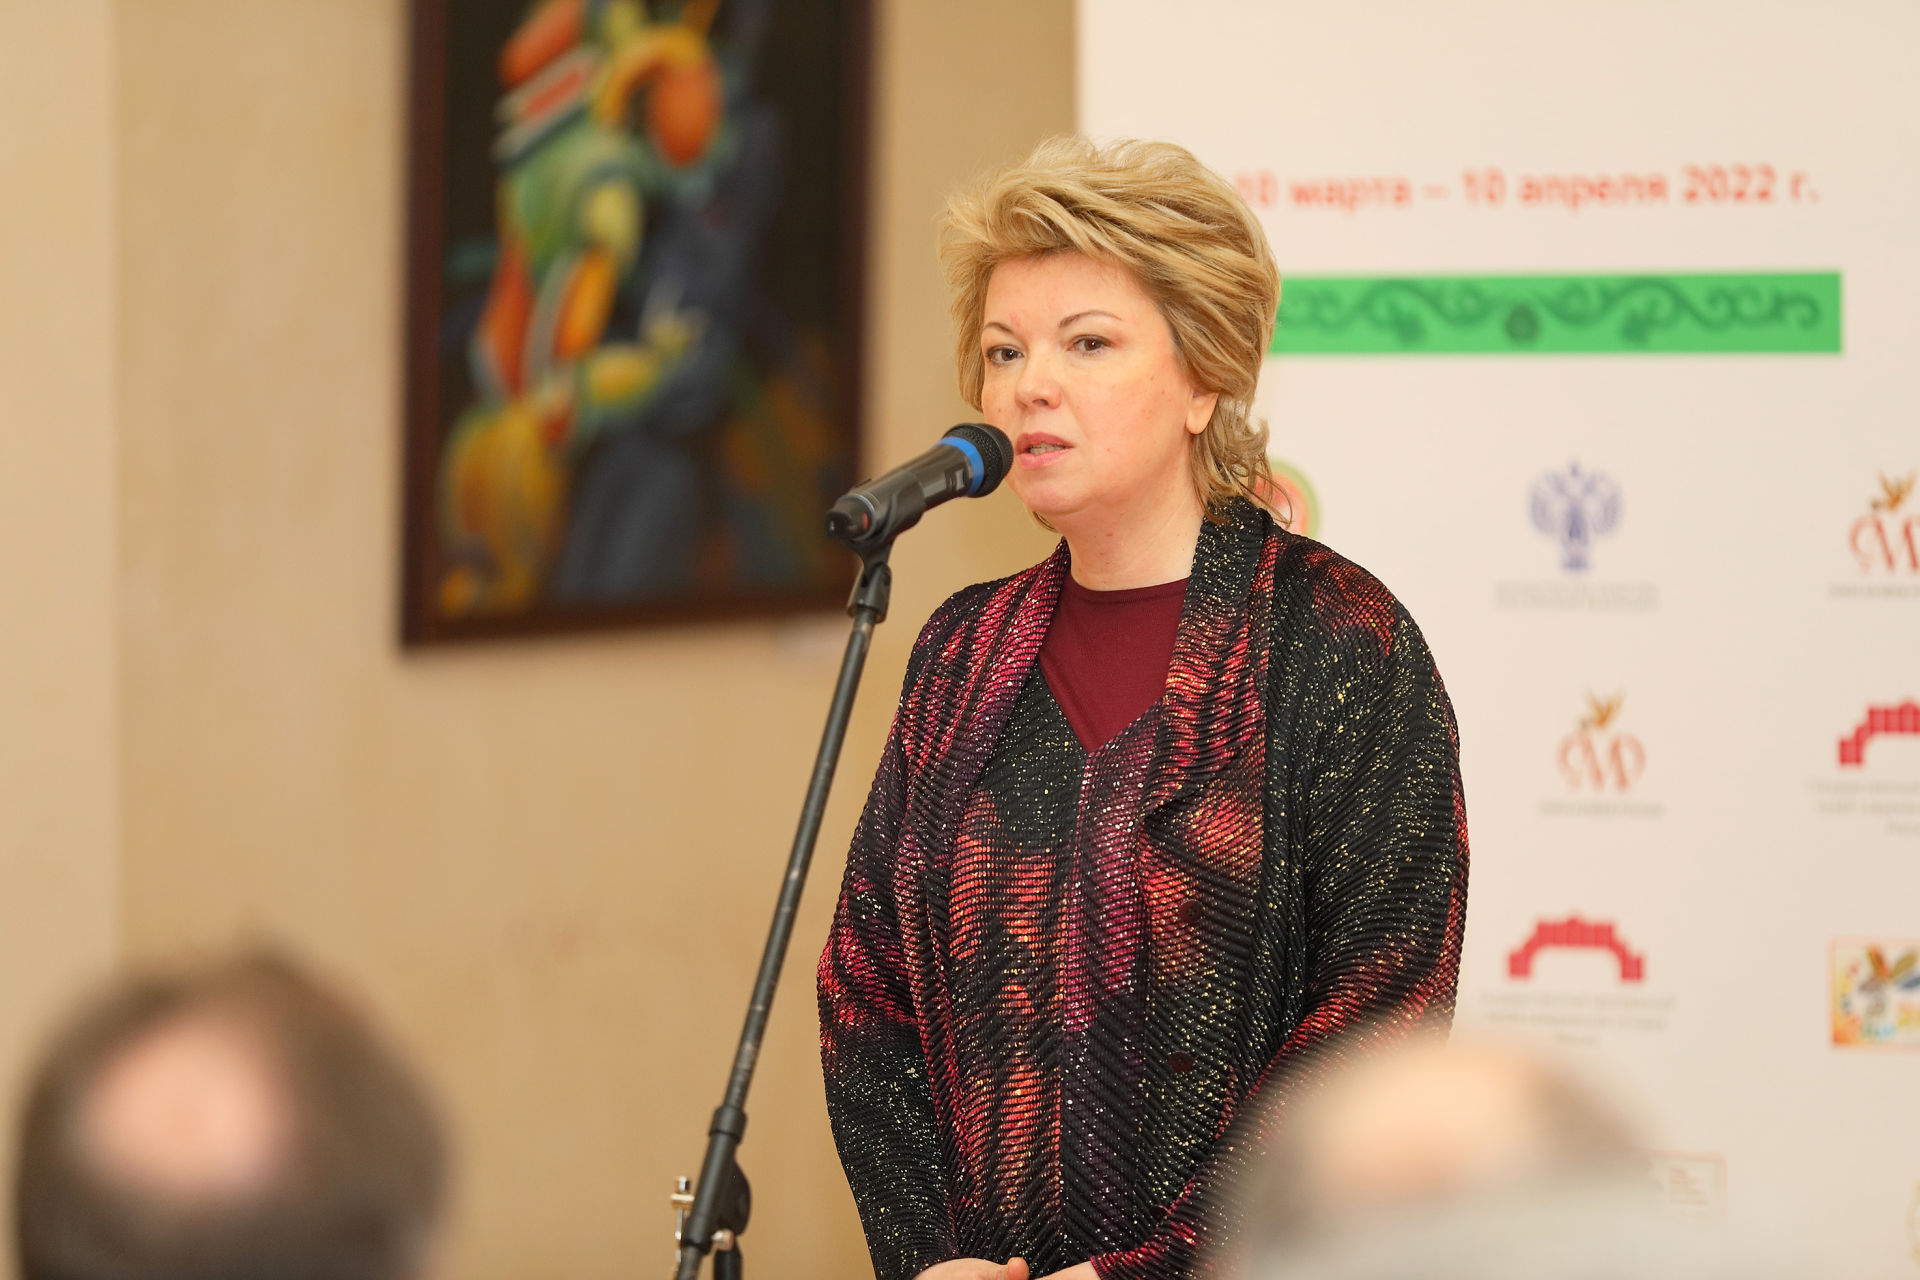 Елабужская выставка «В гостях у татар» впервые открылась в Москве